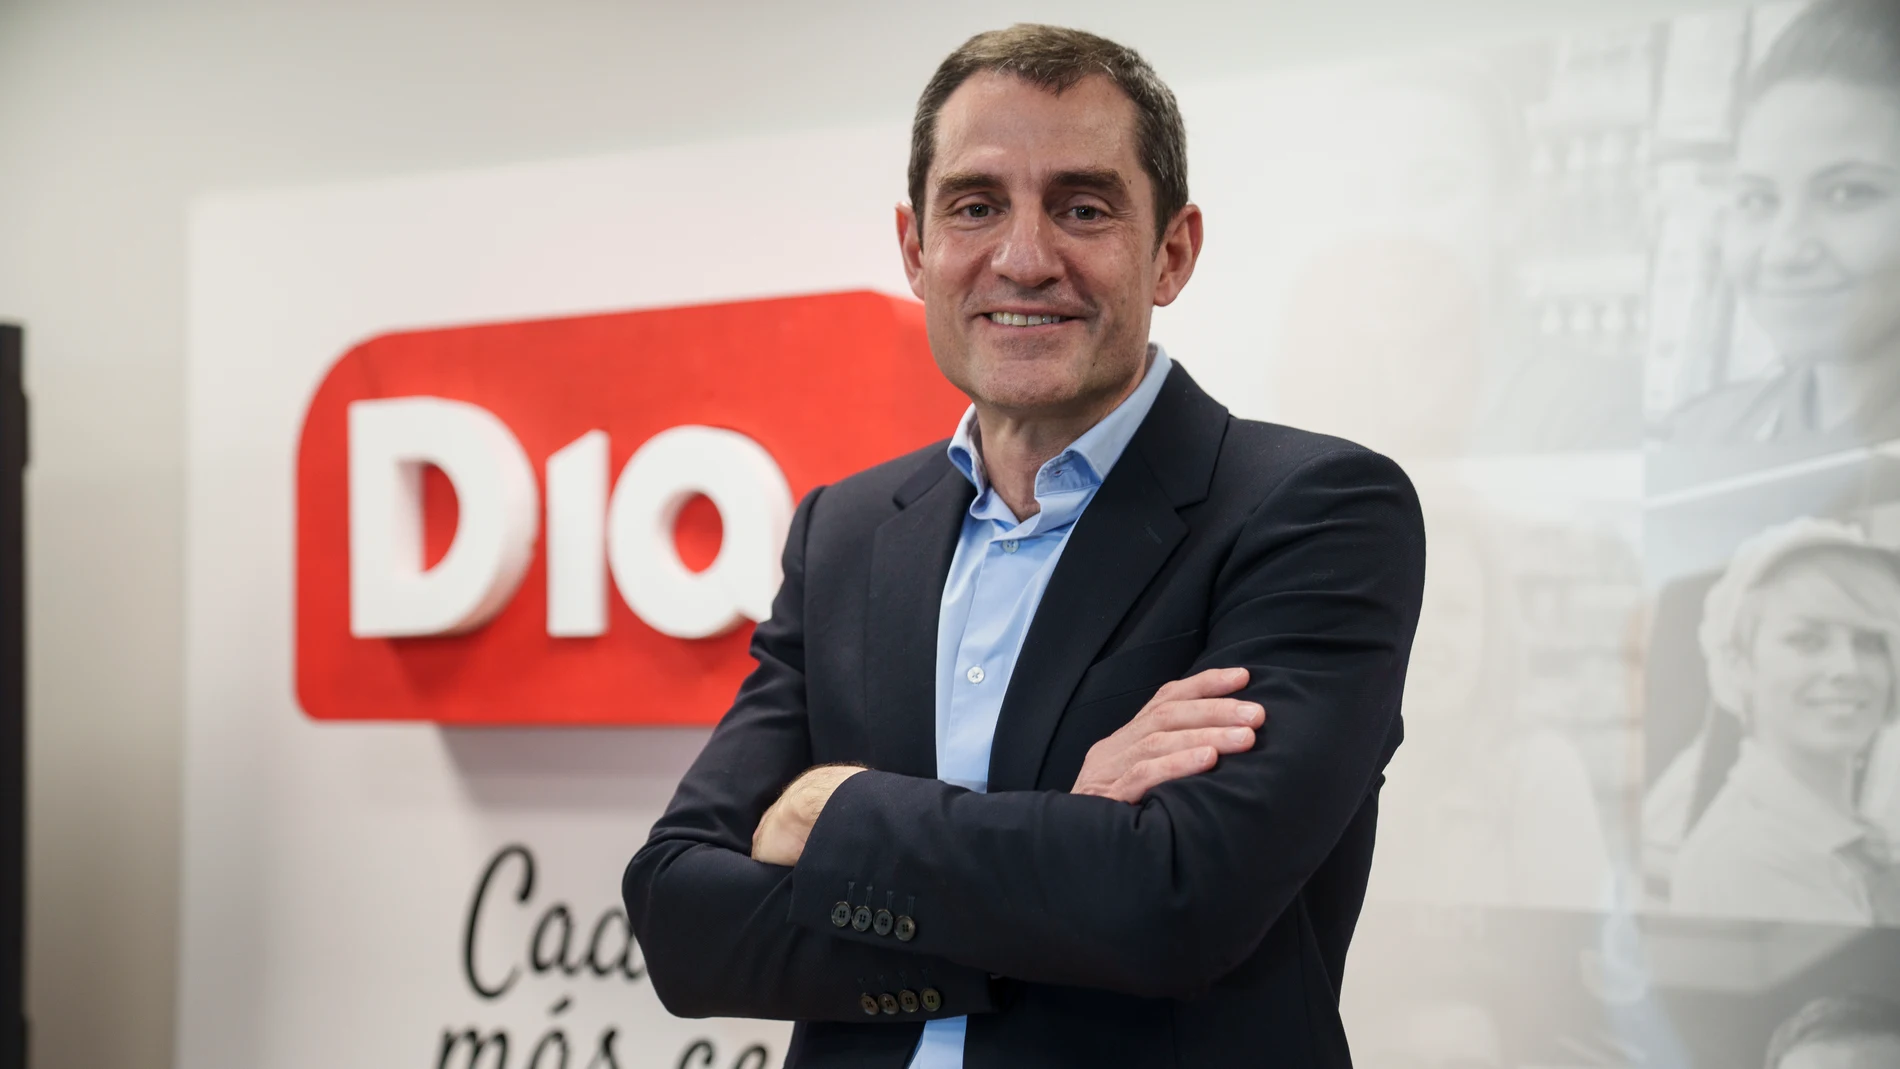 Martín Tolcachir, CEO Global de Dia, en la presentación del nuevo modelo de negocio